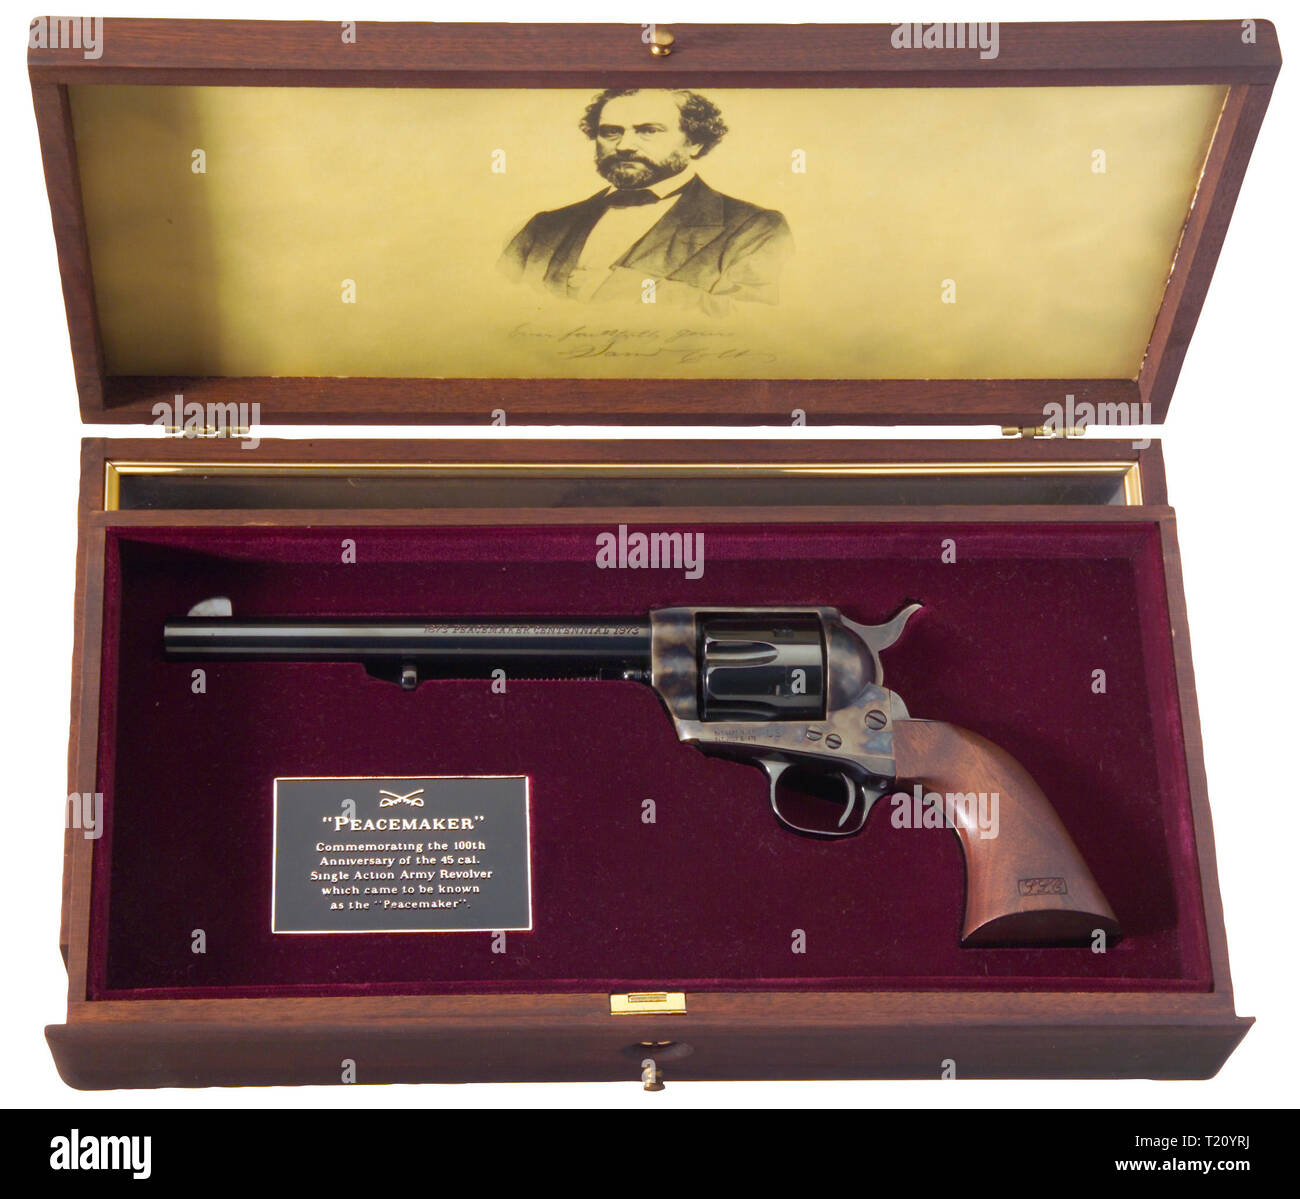 Armi di piccolo calibro, revolver Colt unica azione Army Model 1873 pacificatore, Cal. .45, Additional-Rights-Clearance-Info-Not-Available Foto Stock